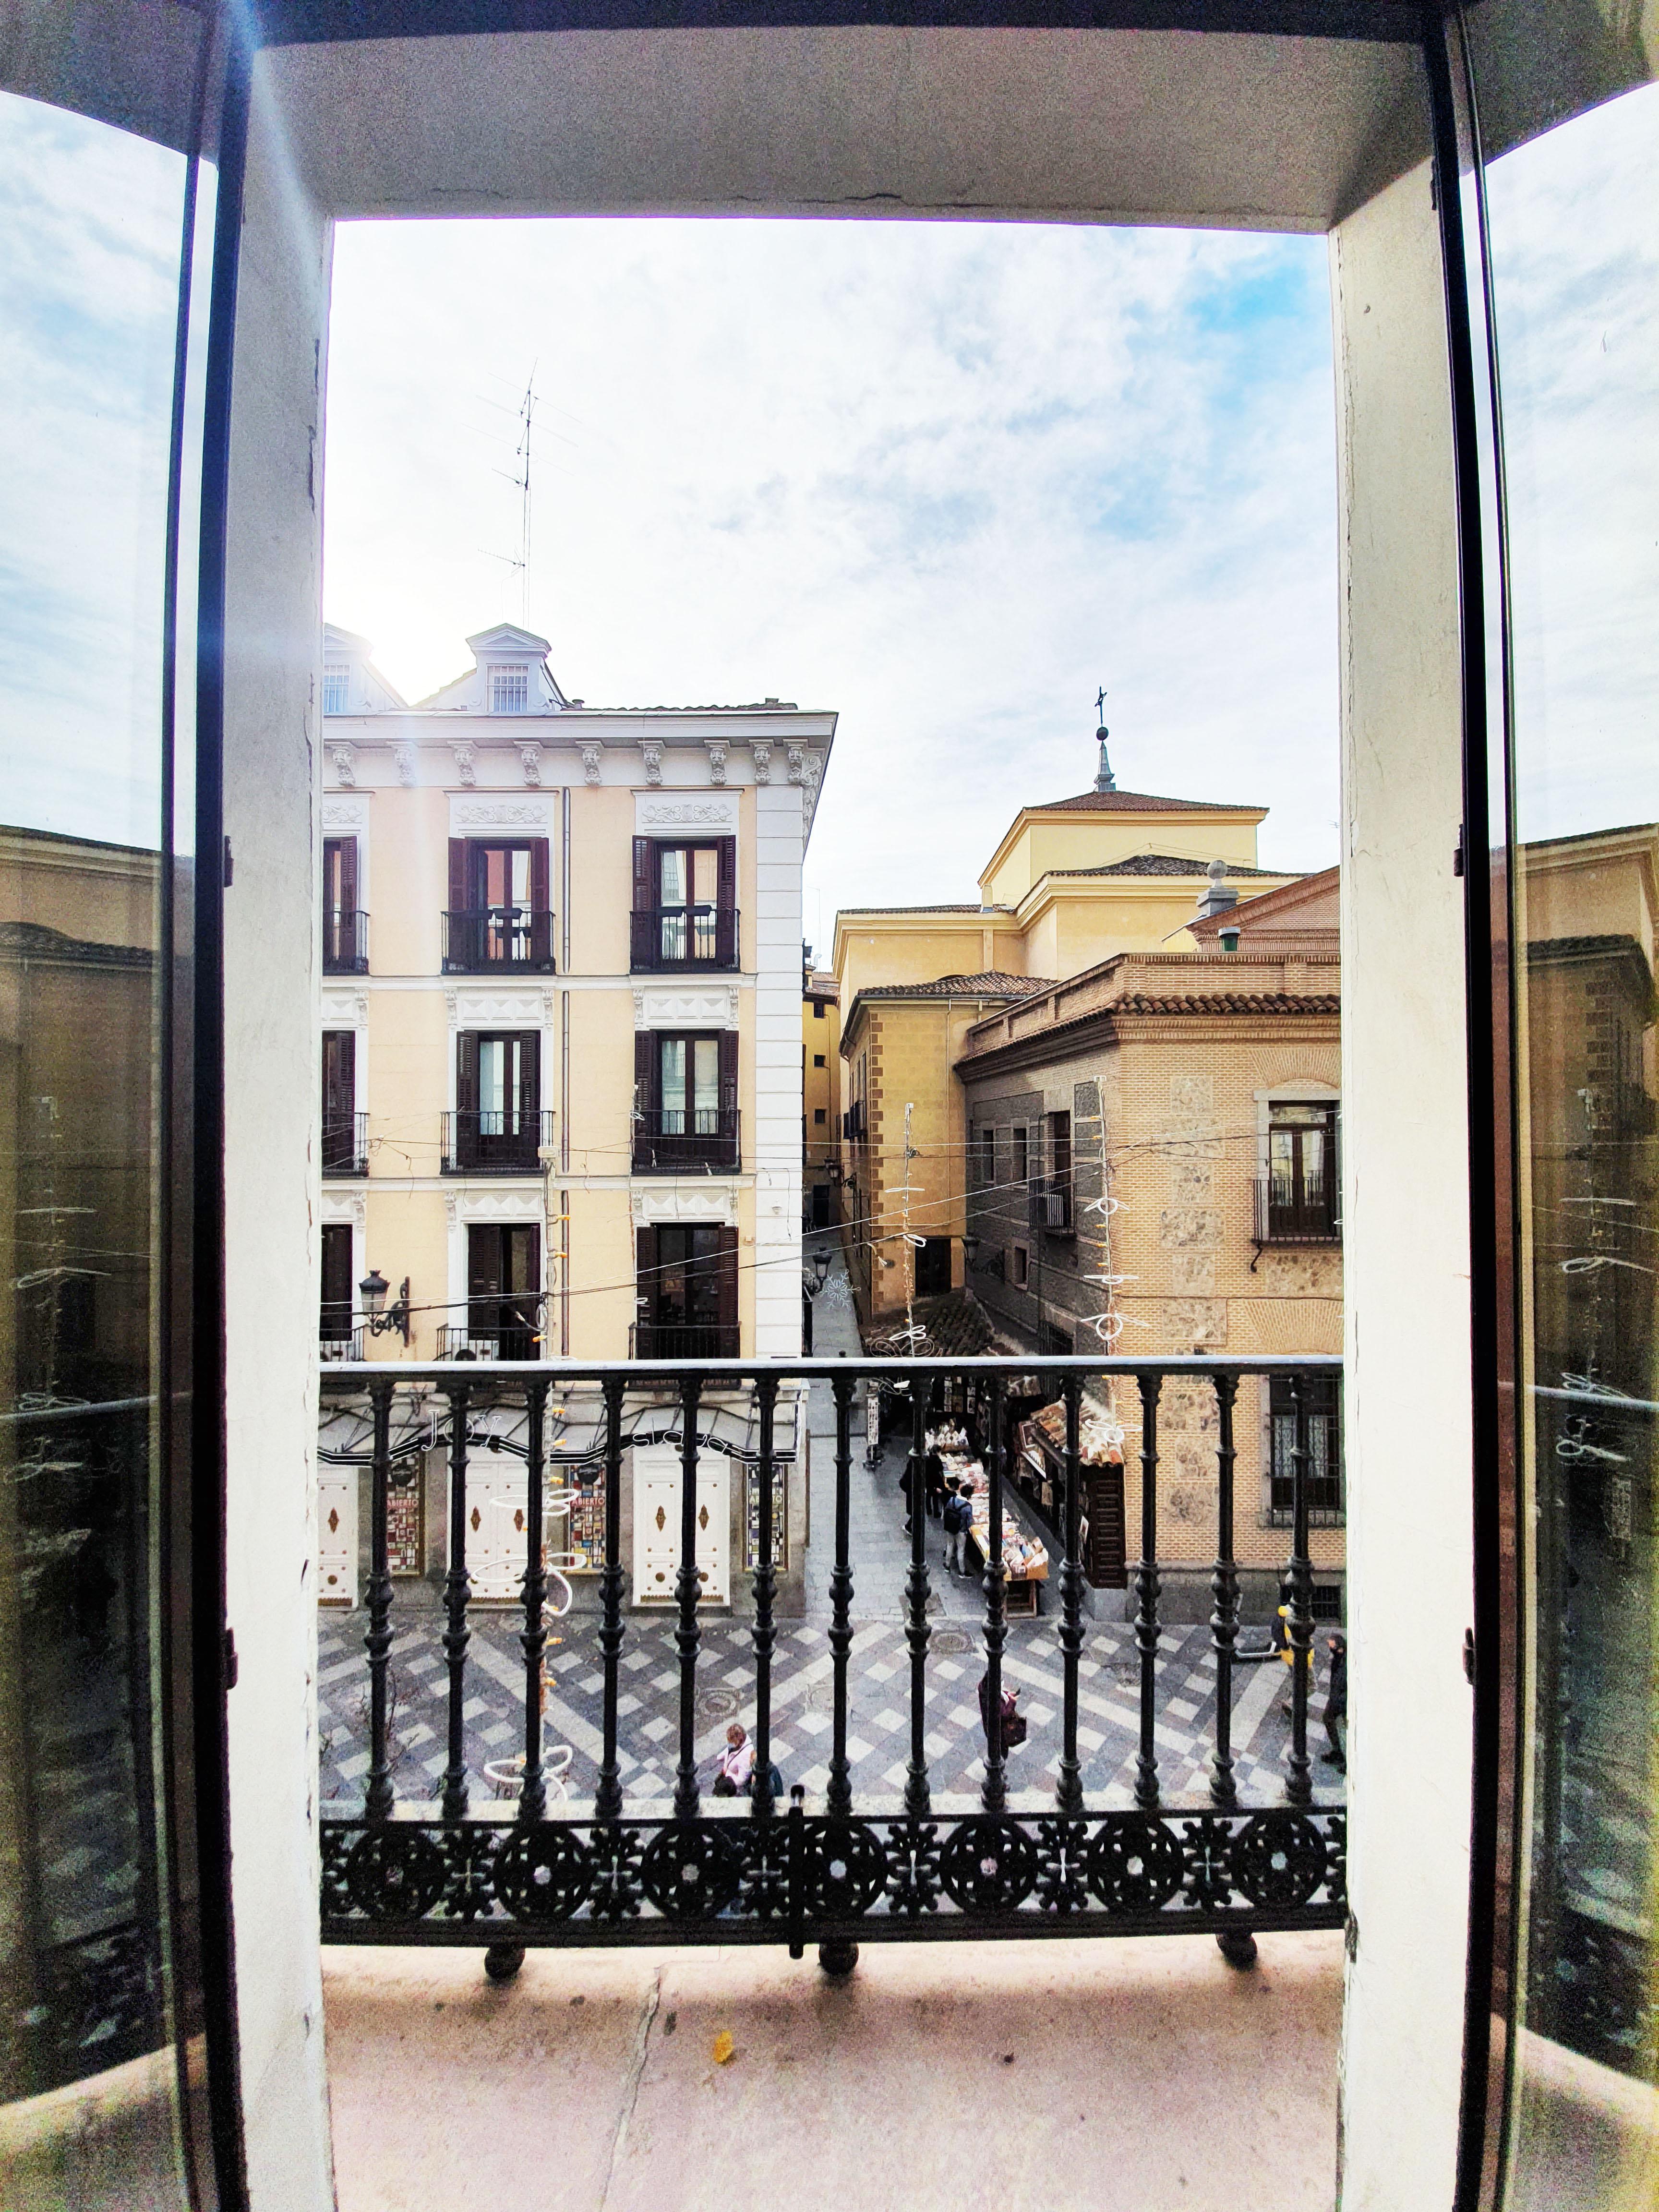 Hostal Alicante Madrid Exterior photo